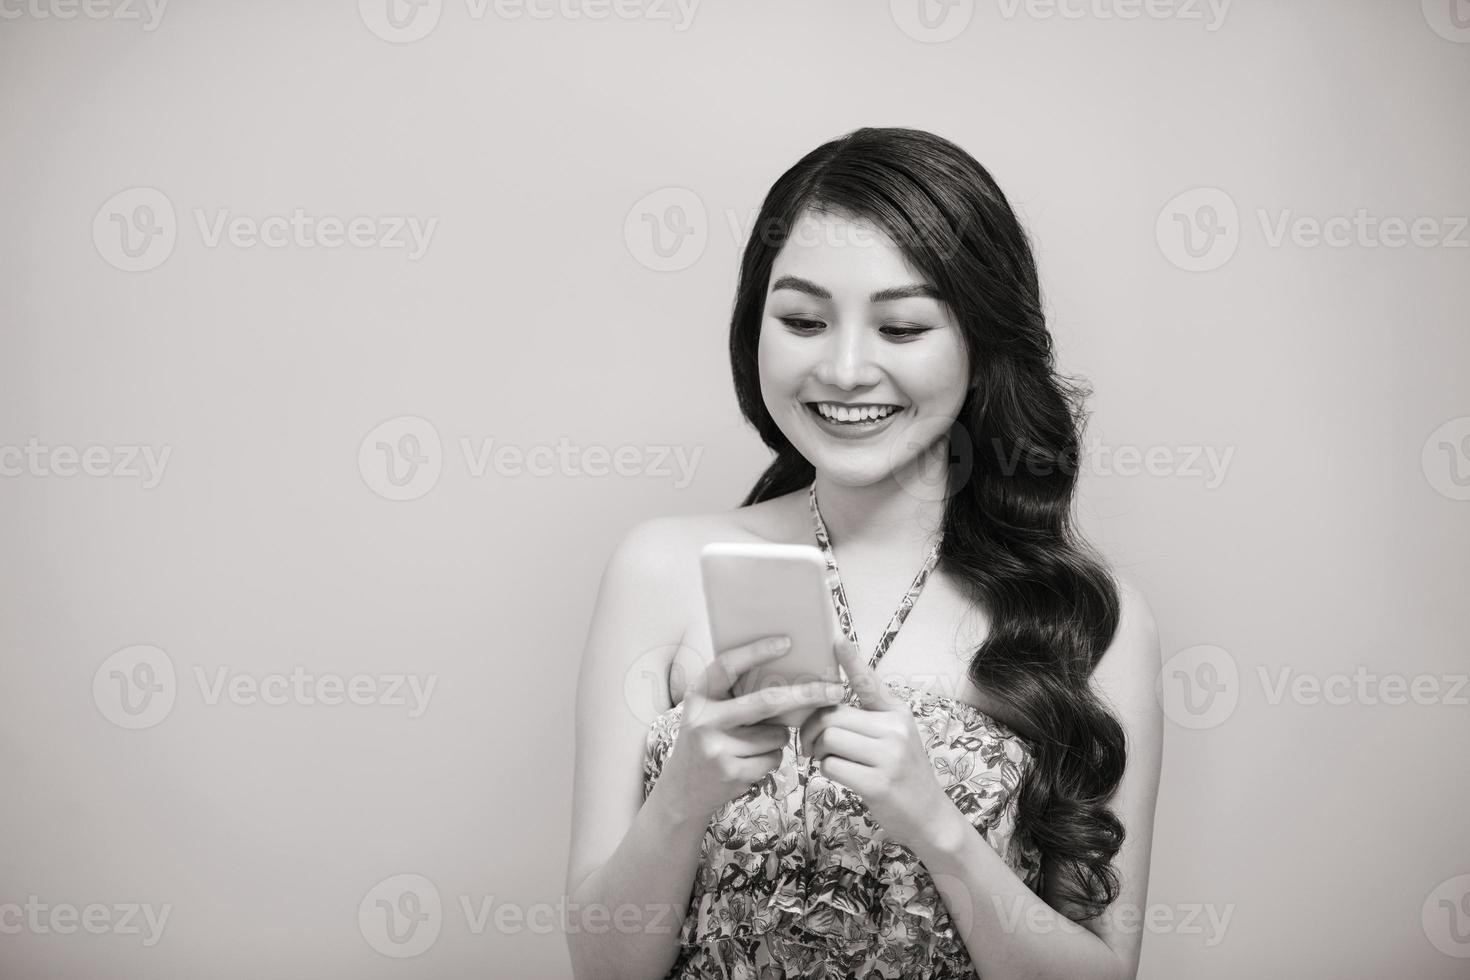 portrait d'une femme décontractée souriante tenant un smartphone sur fond blanc. photo noir et blanc.